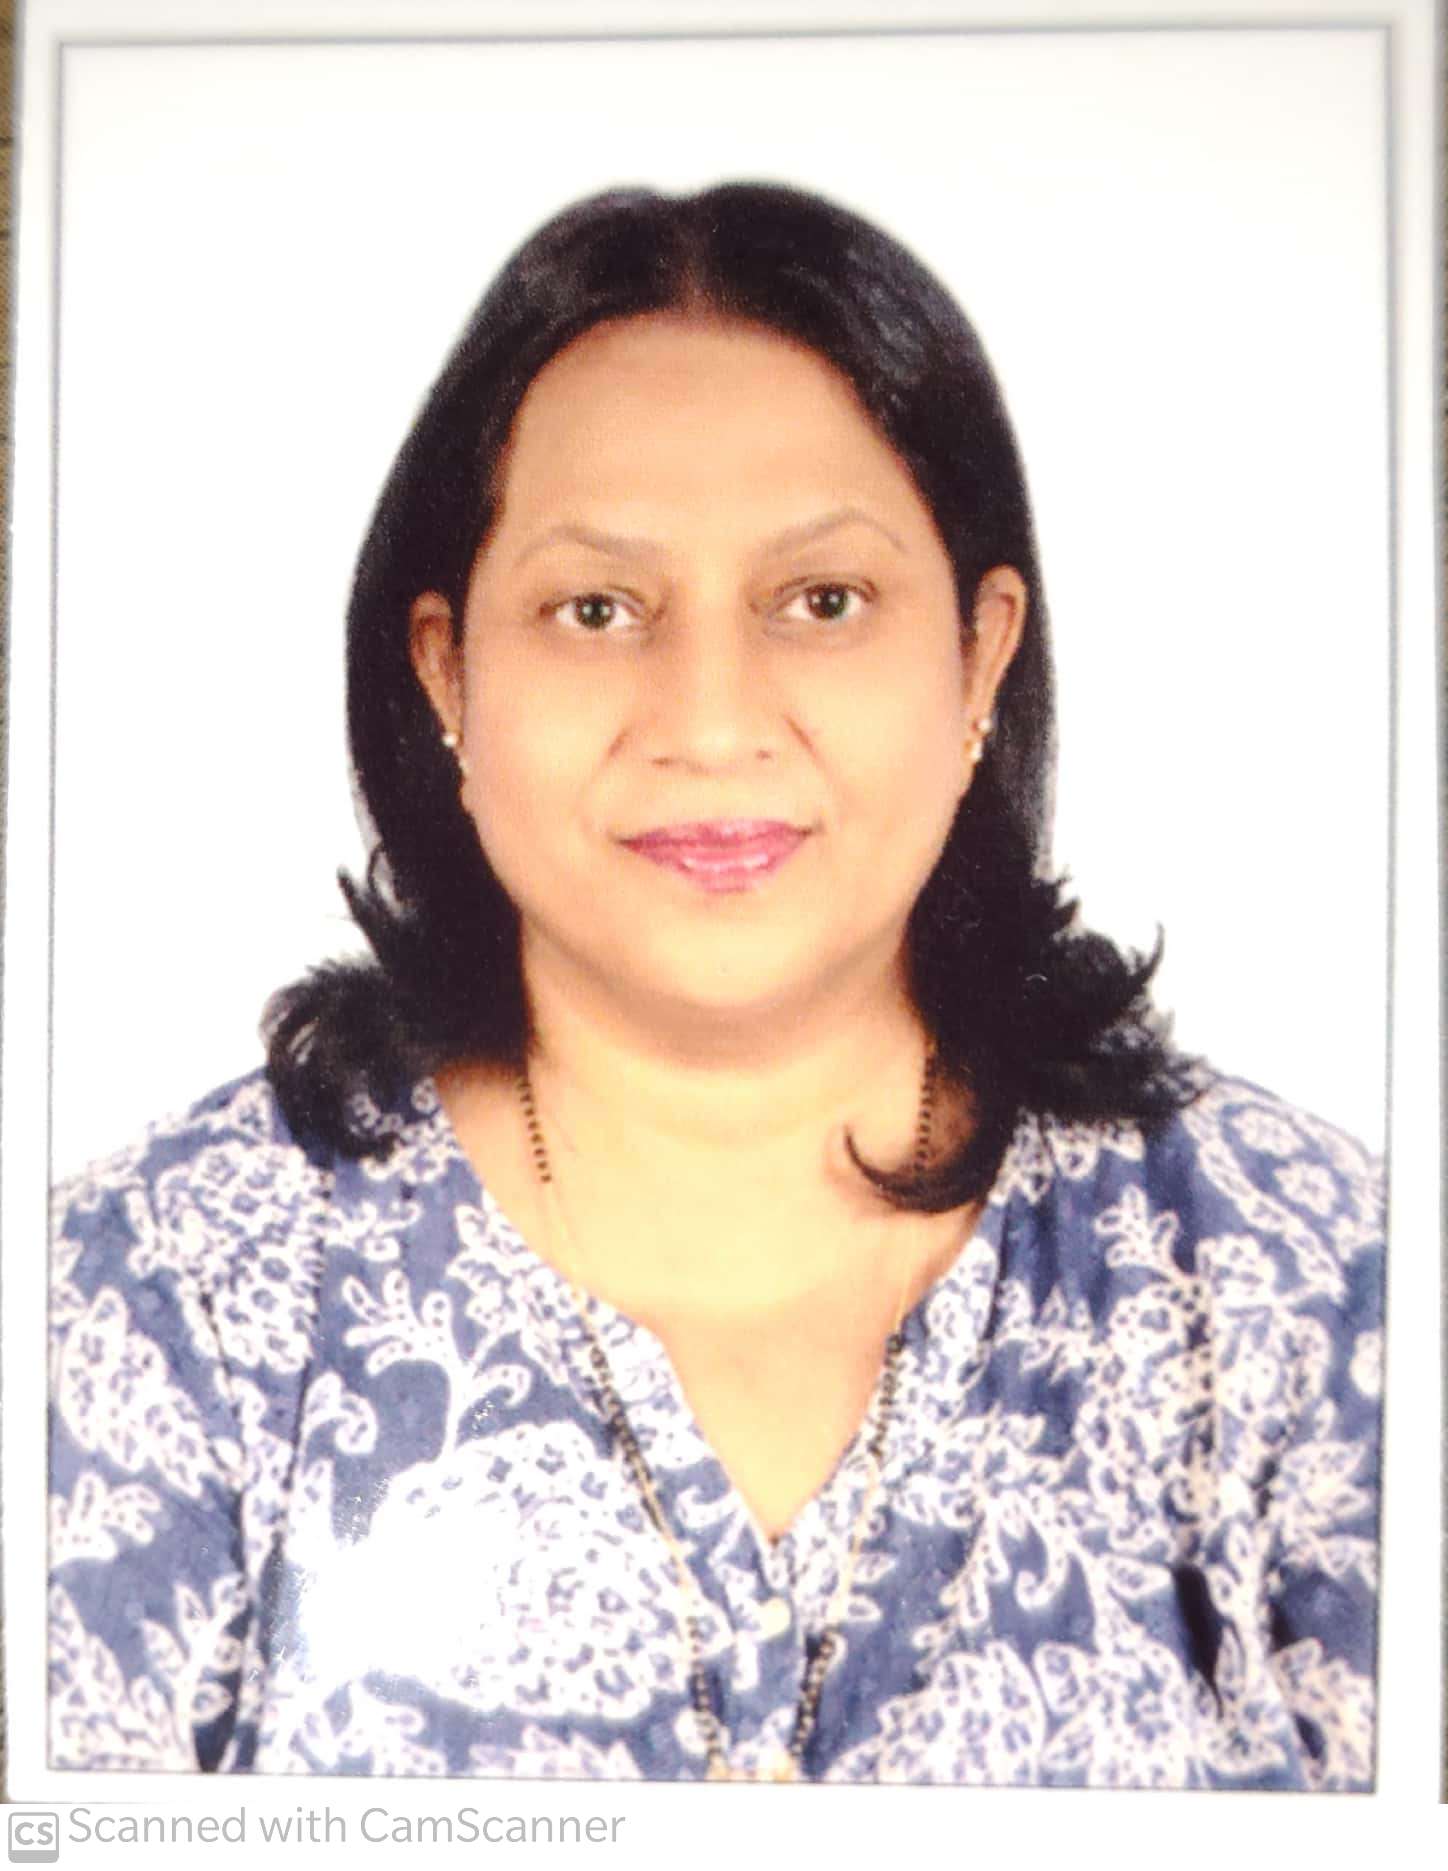 Ms. Amita Nair